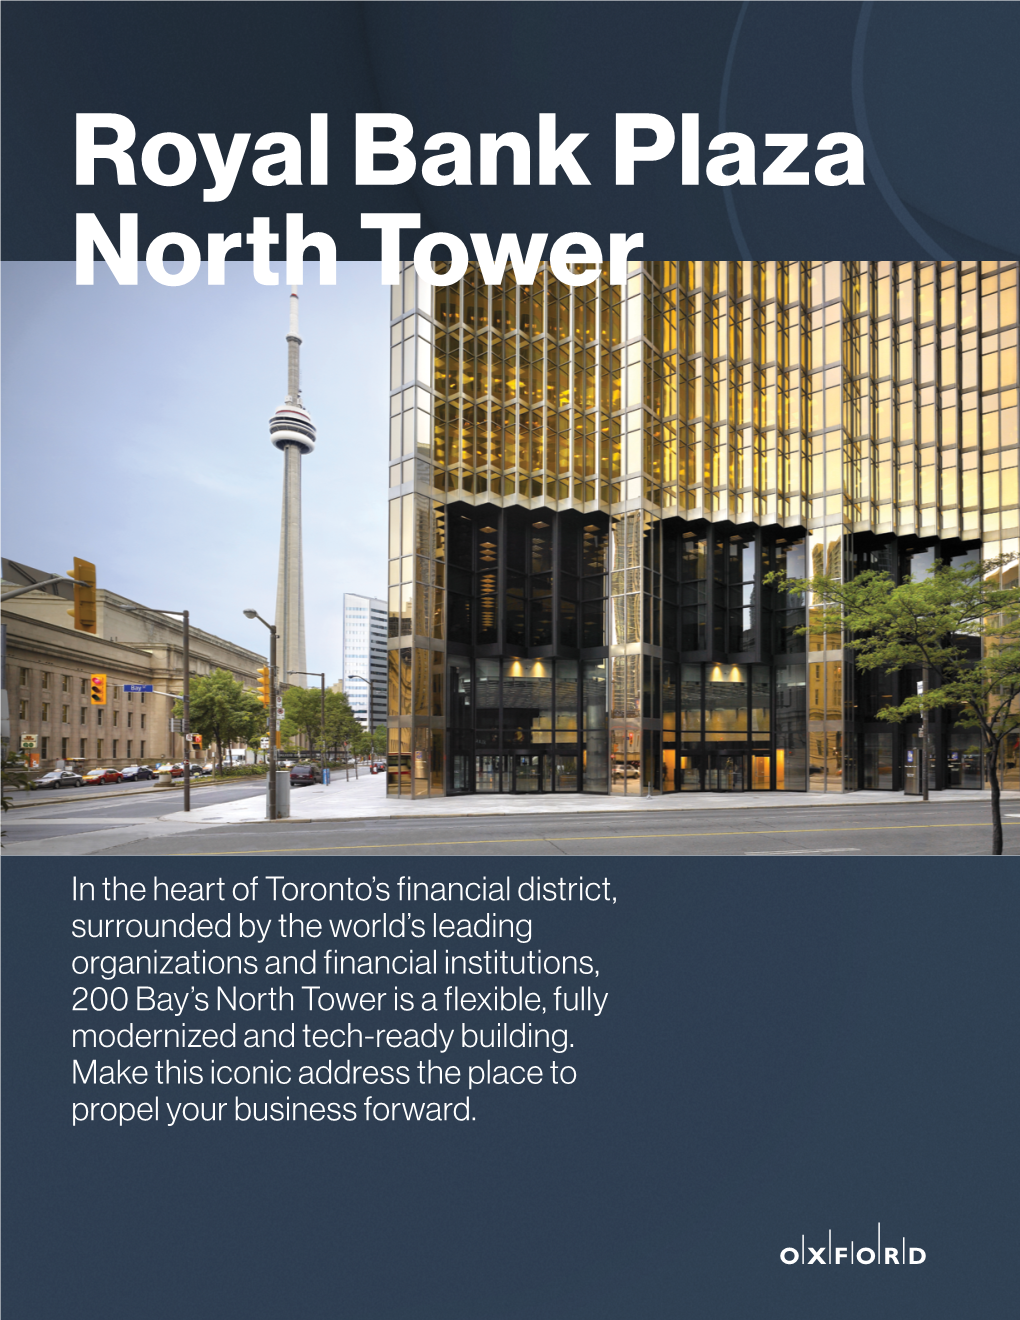 Royal Bank Plaza North Tower